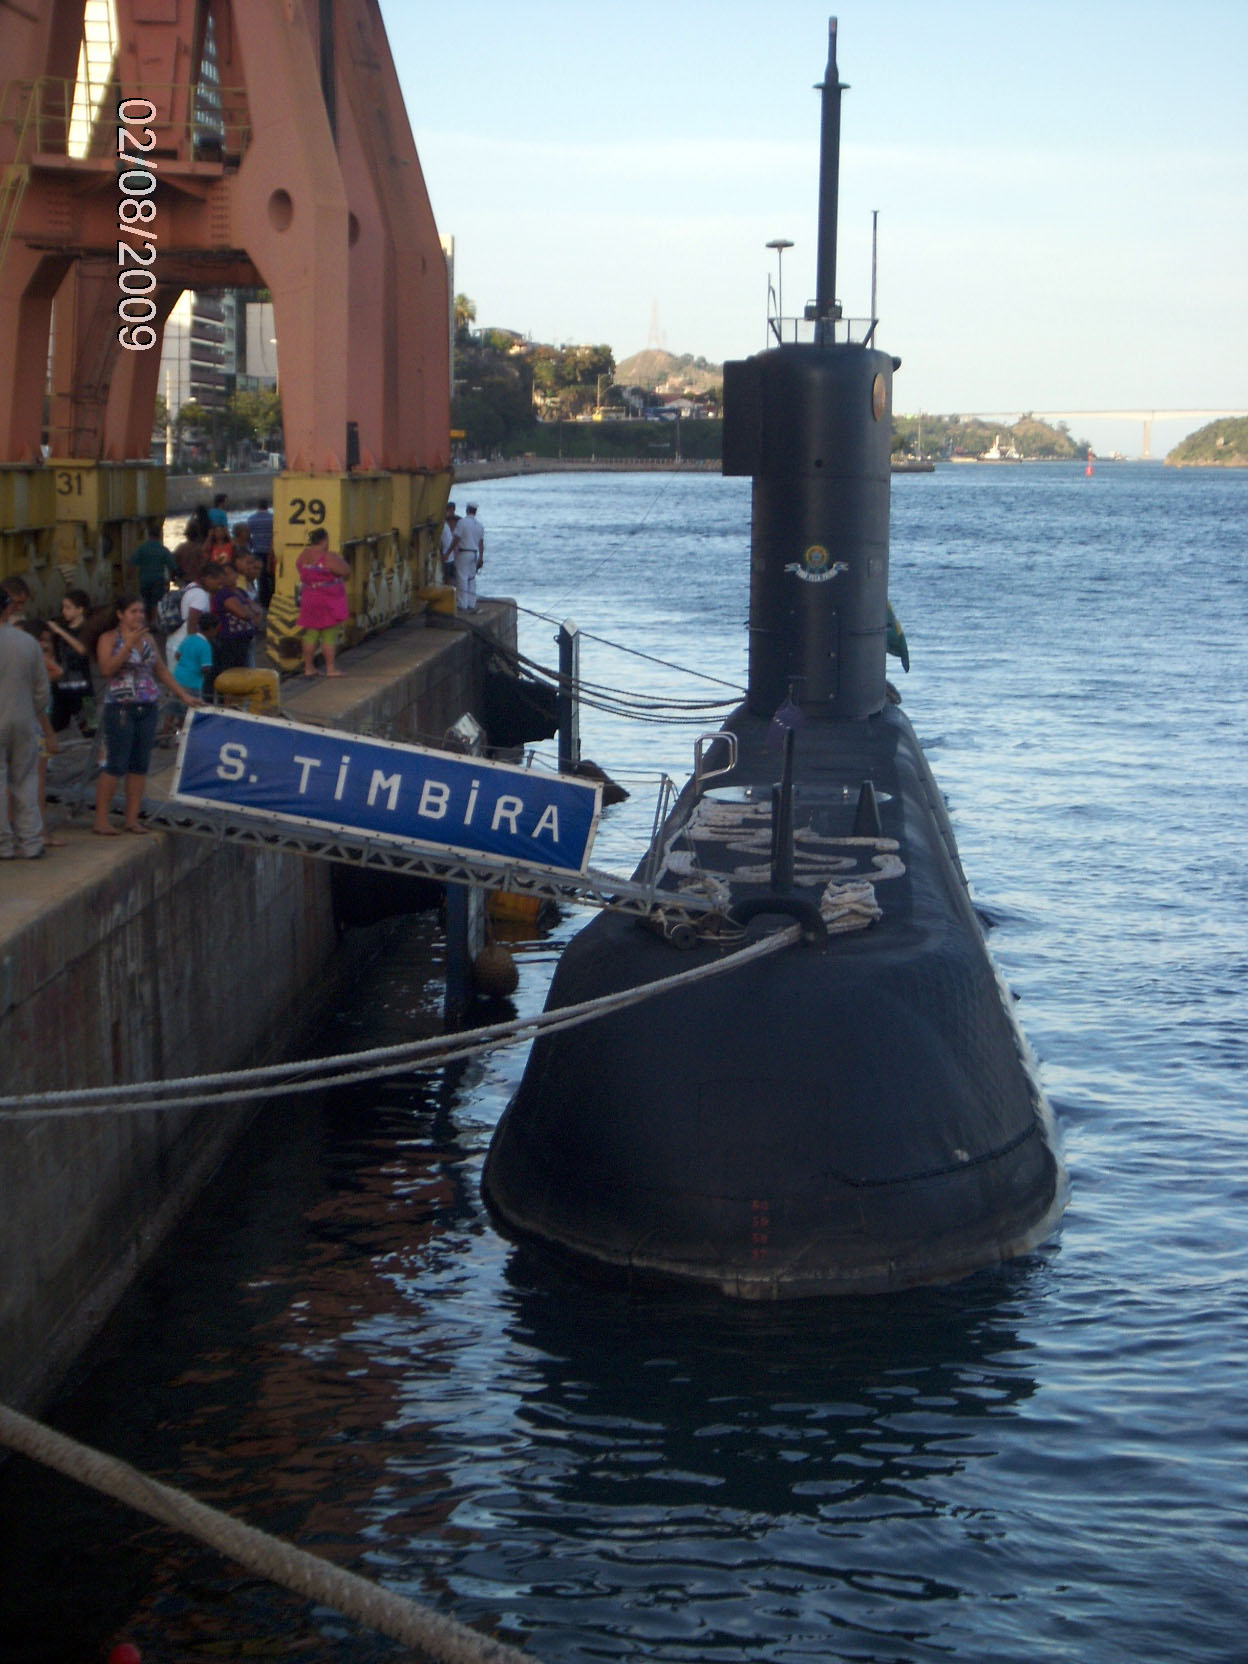 O Timbira atracado em Vitória em 2 de agosto de 2009. (foto: Pedro Paulo Jorge Pereira, via Poder Naval On-Line)